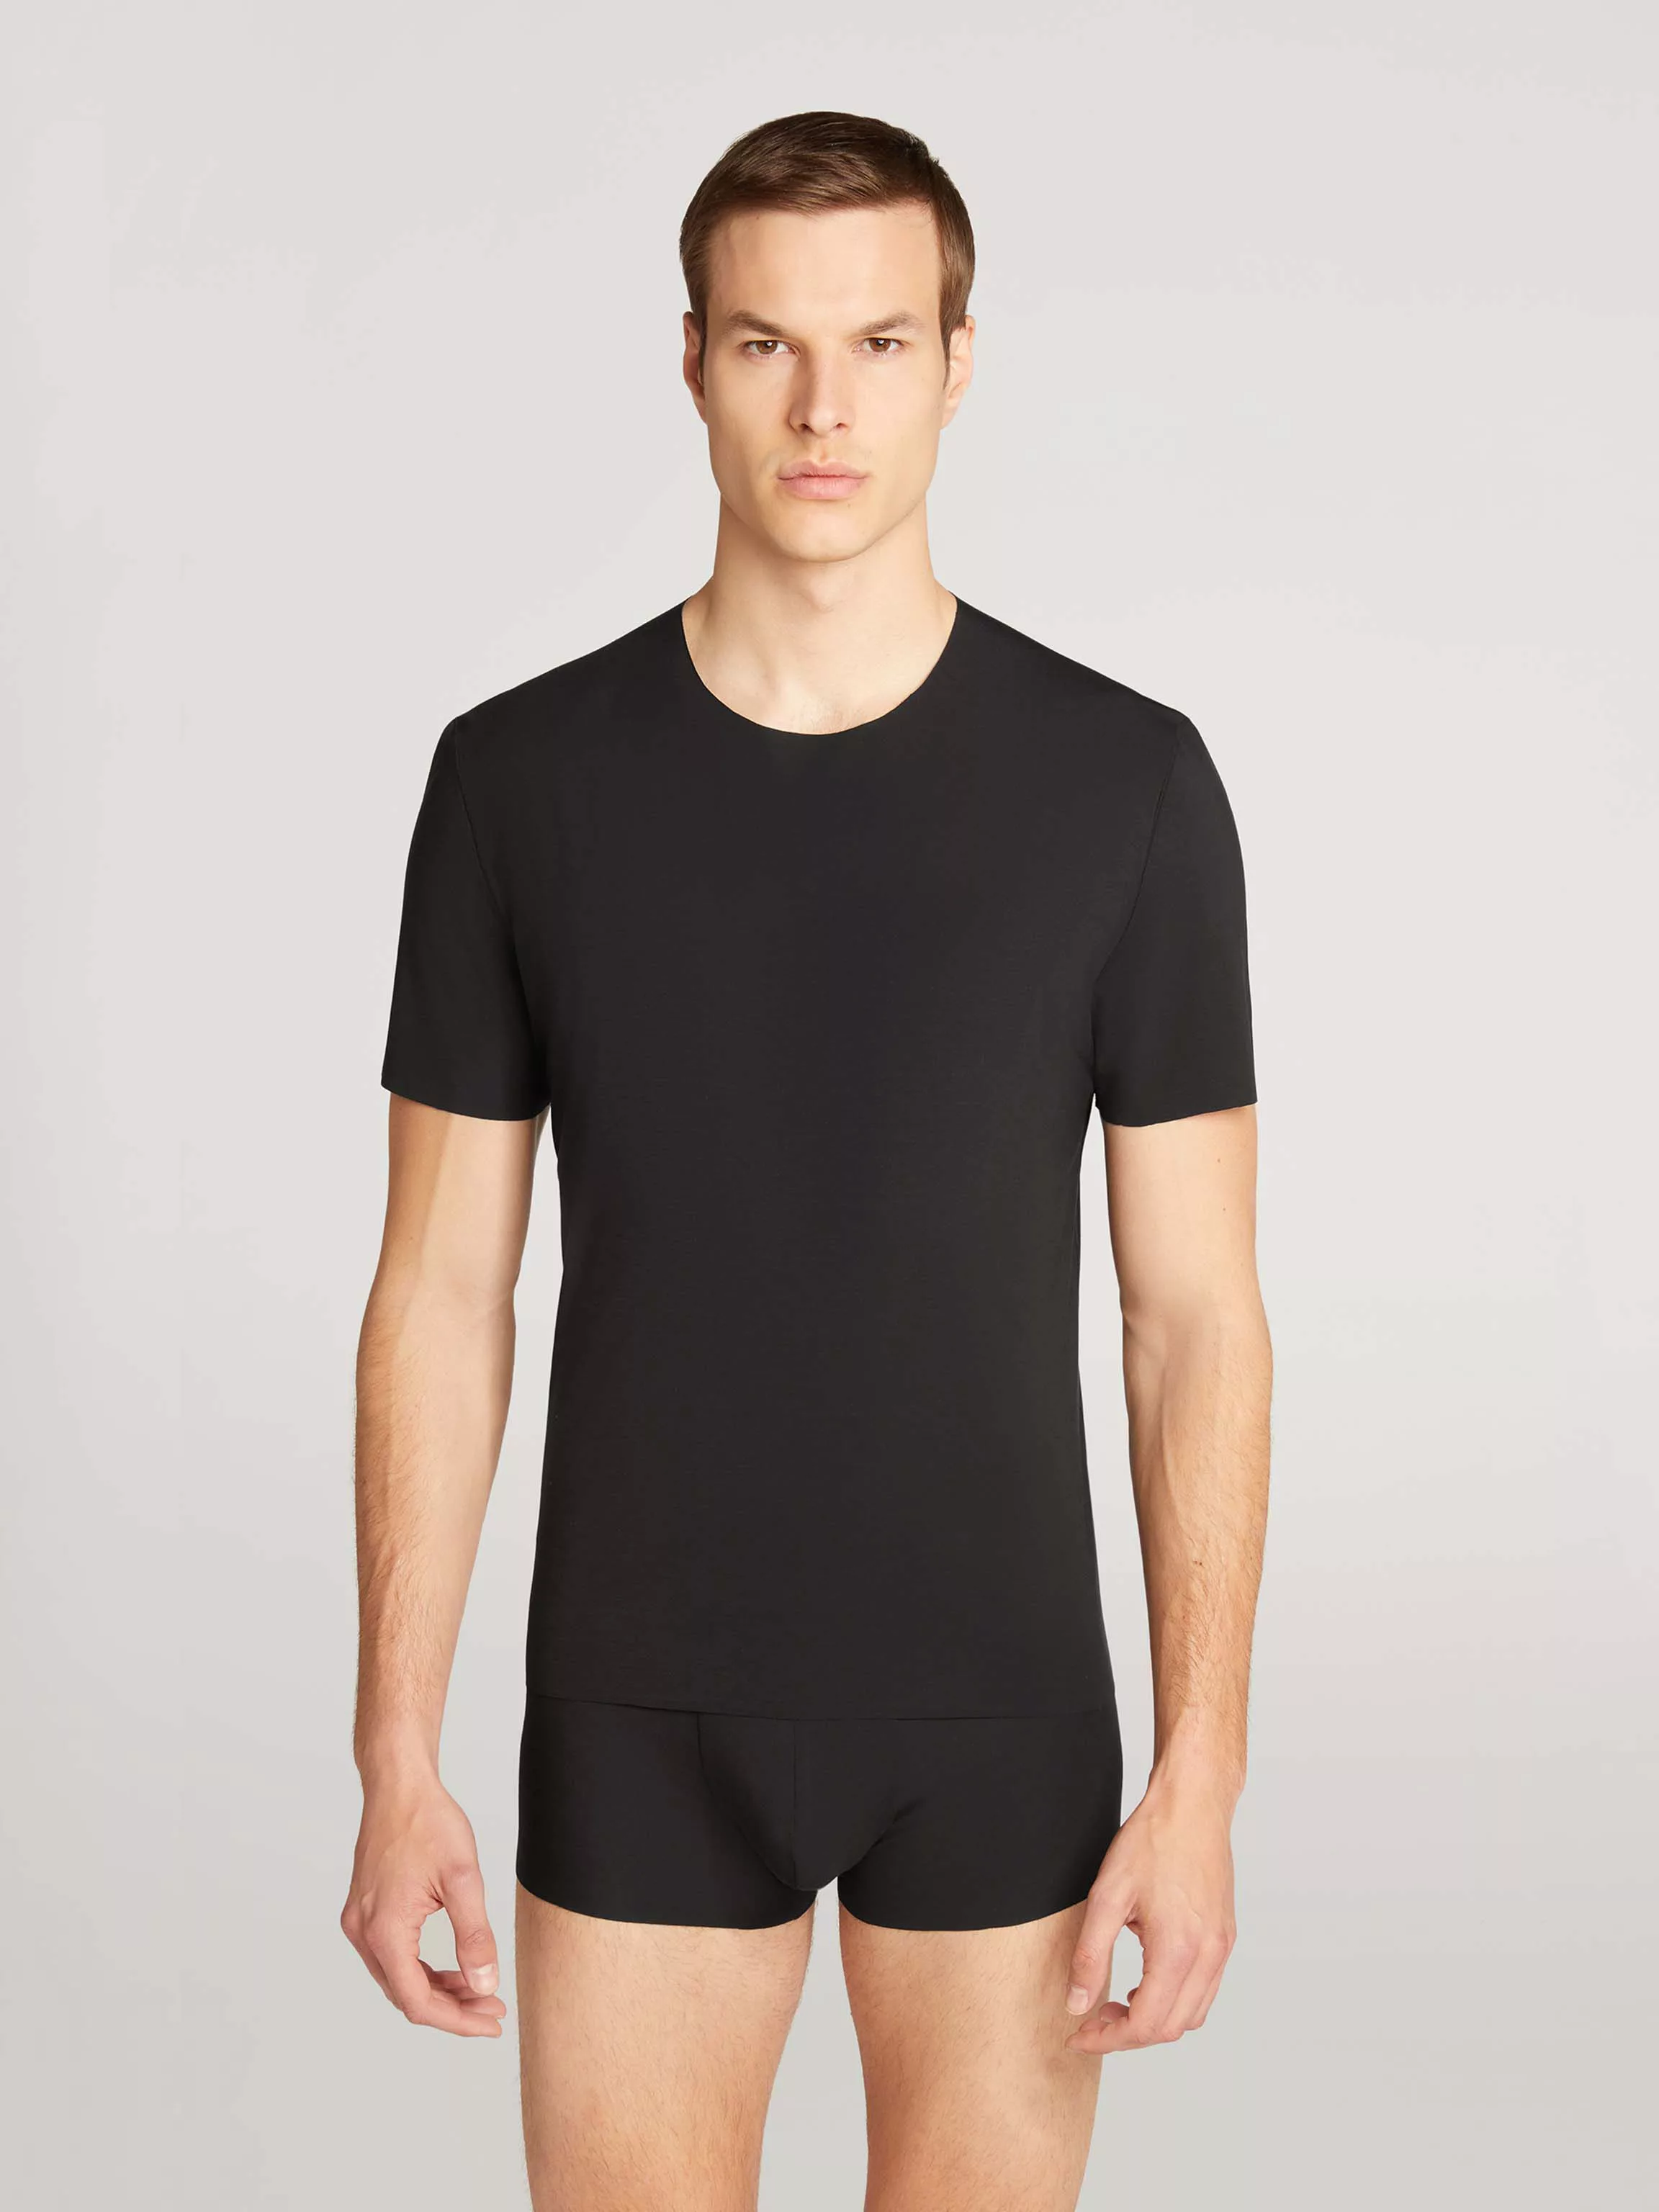 Wolford - Men's Pure T-Shirt, Frau, black, Größe: M günstig online kaufen